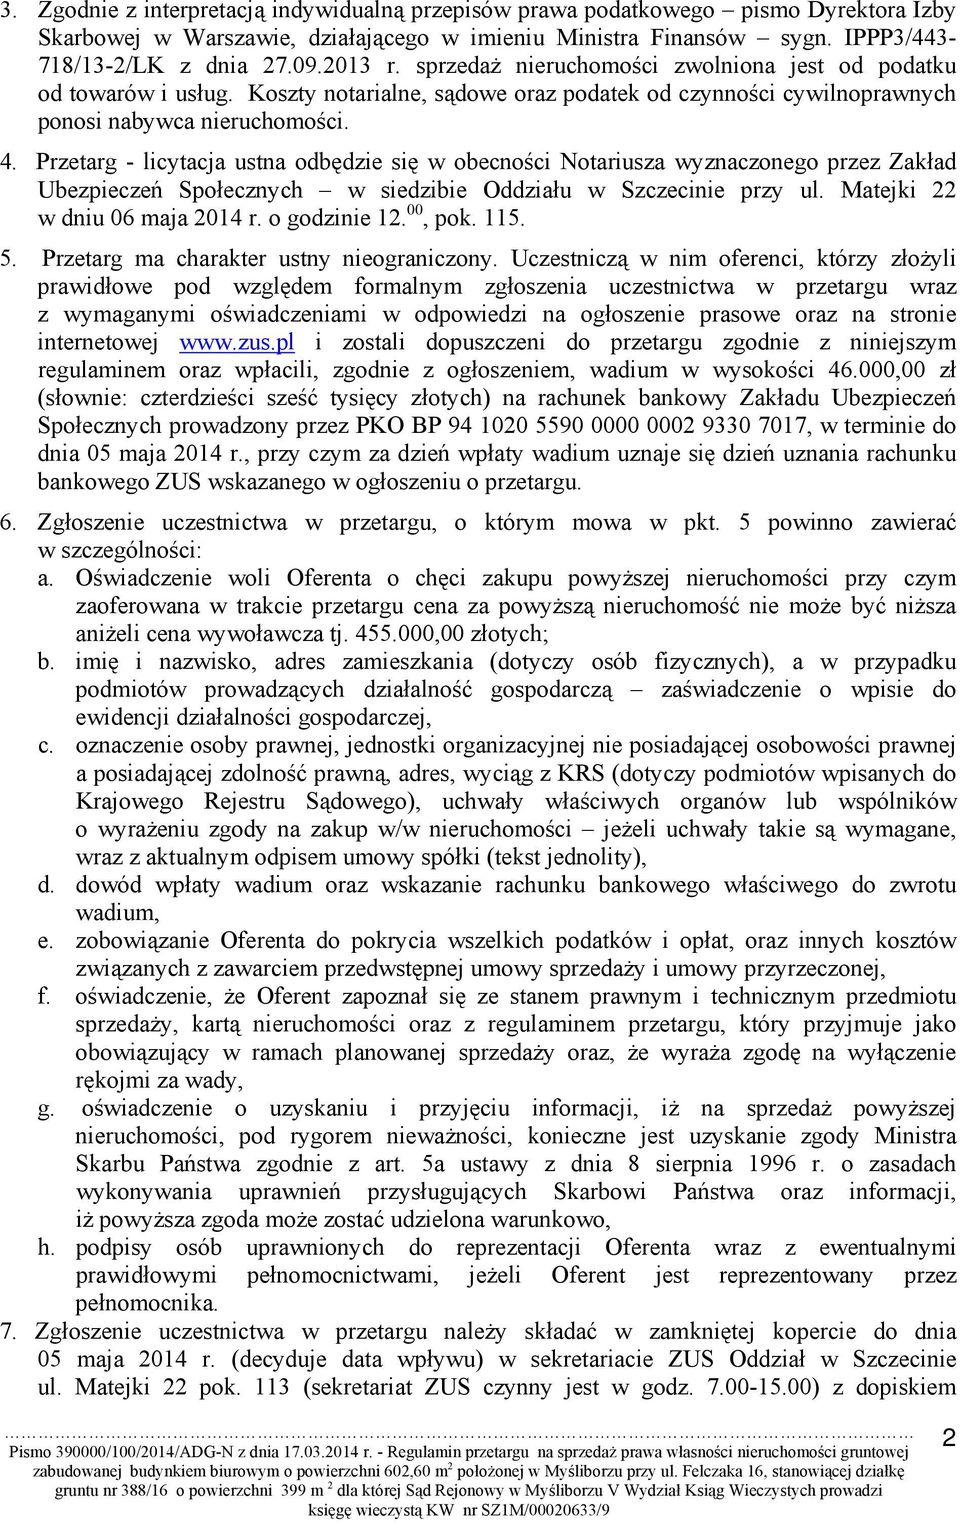 Przetarg - licytacja ustna odbędzie się w obecności Notariusza wyznaczonego przez Zakład Ubezpieczeń Społecznych w siedzibie Oddziału w Szczecinie przy ul. Matejki 22 w dniu 06 maja 2014 r.